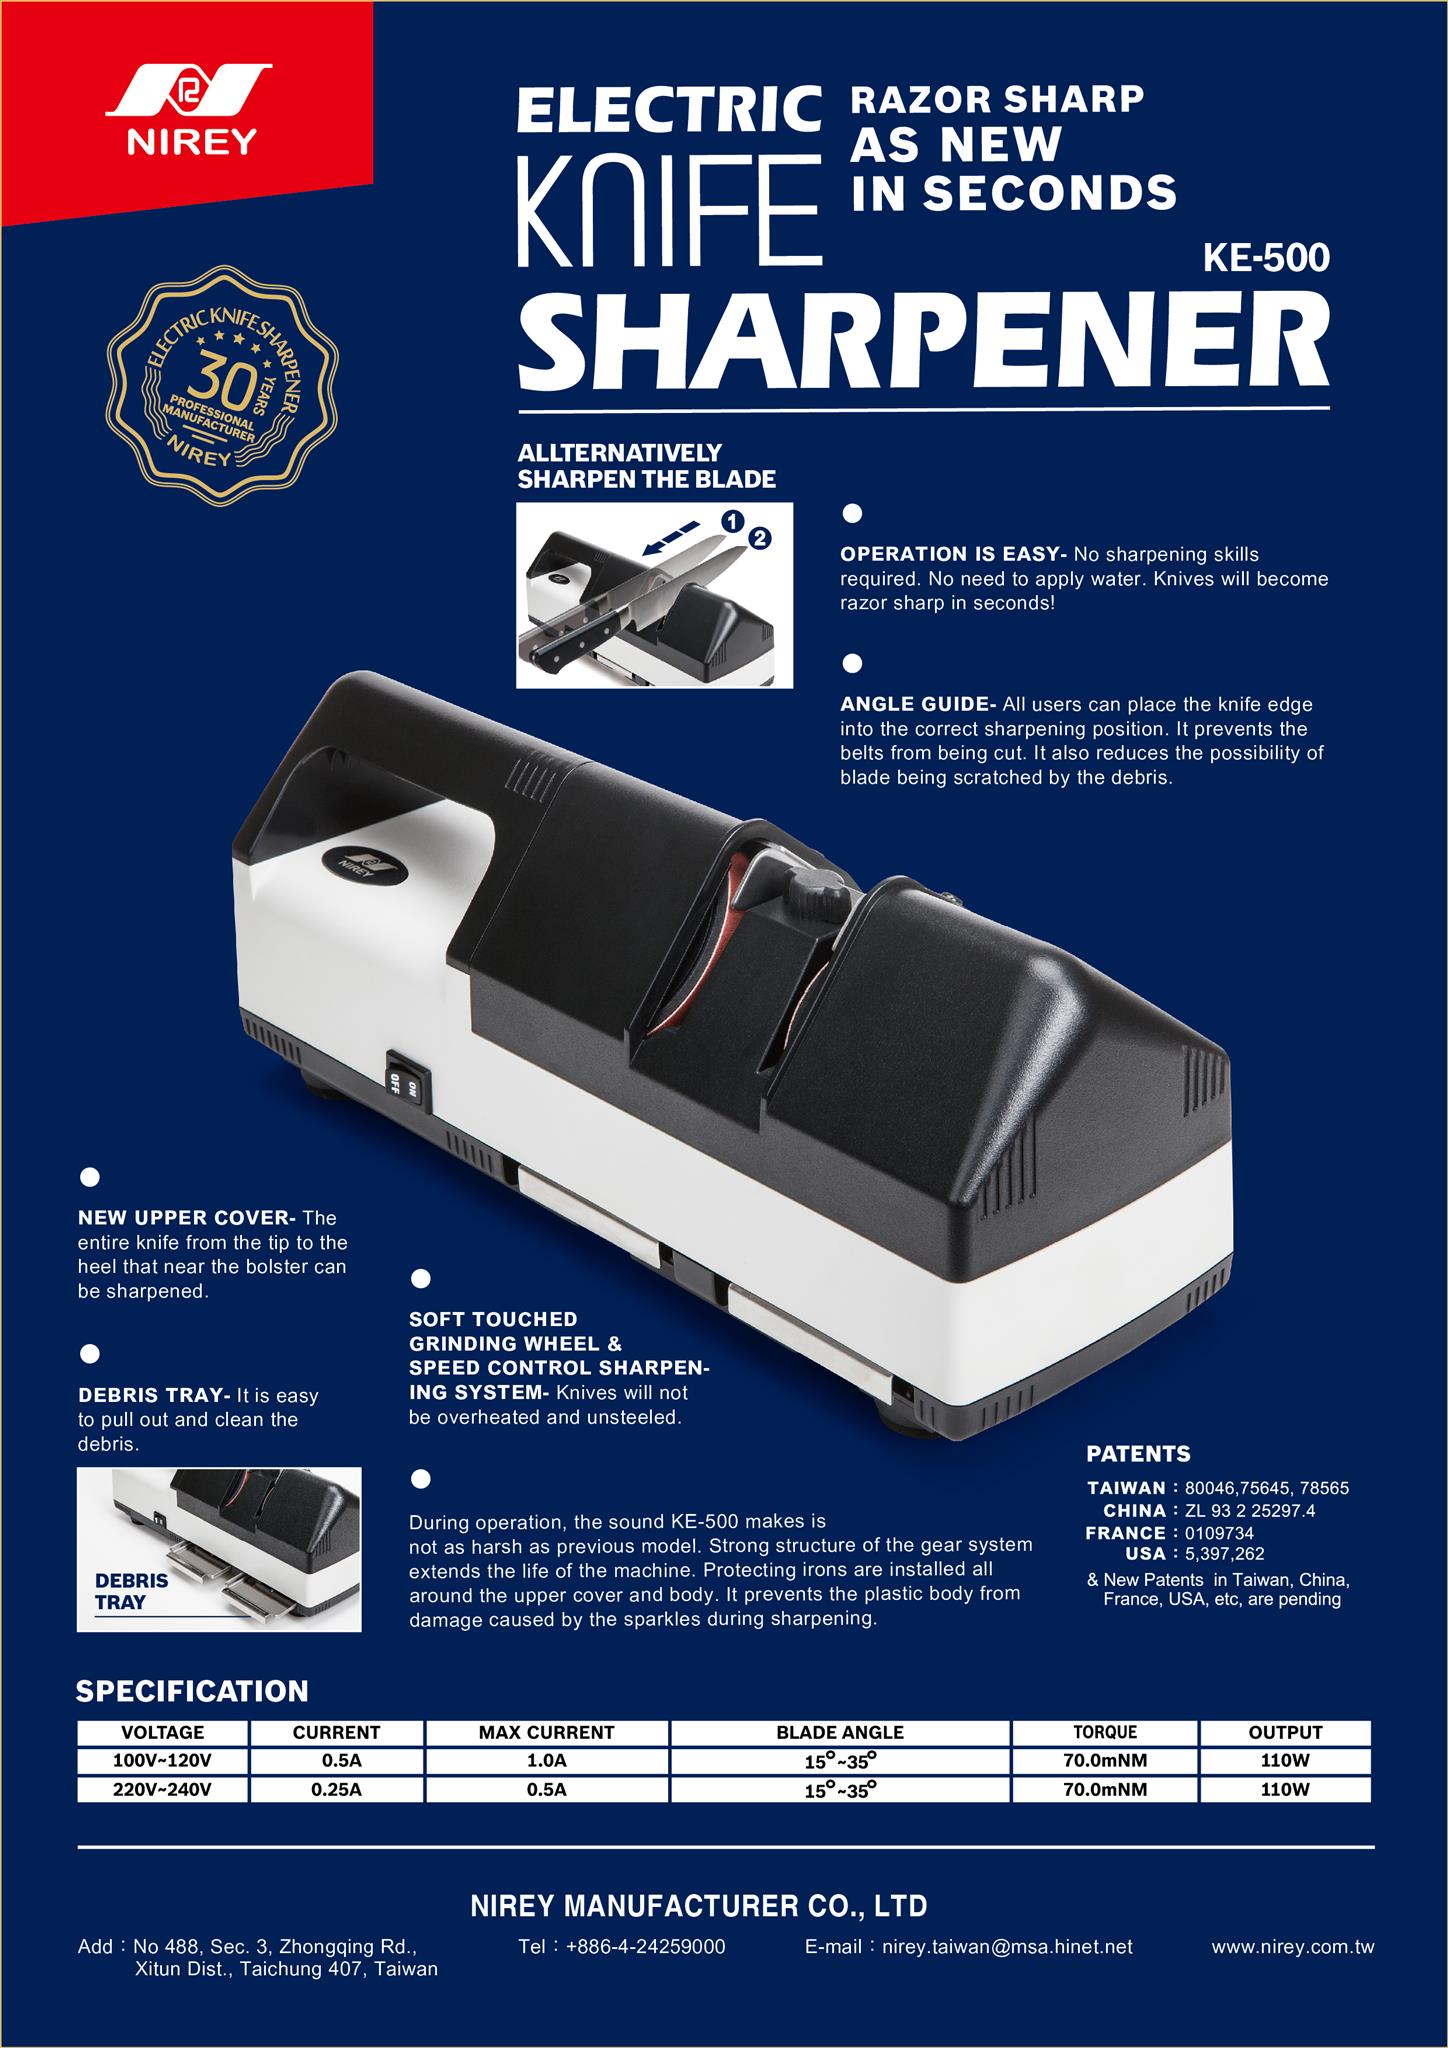 http://tce.sg/wp-content/uploads/2018/05/KE500-electric-knife-sharpener.jpg